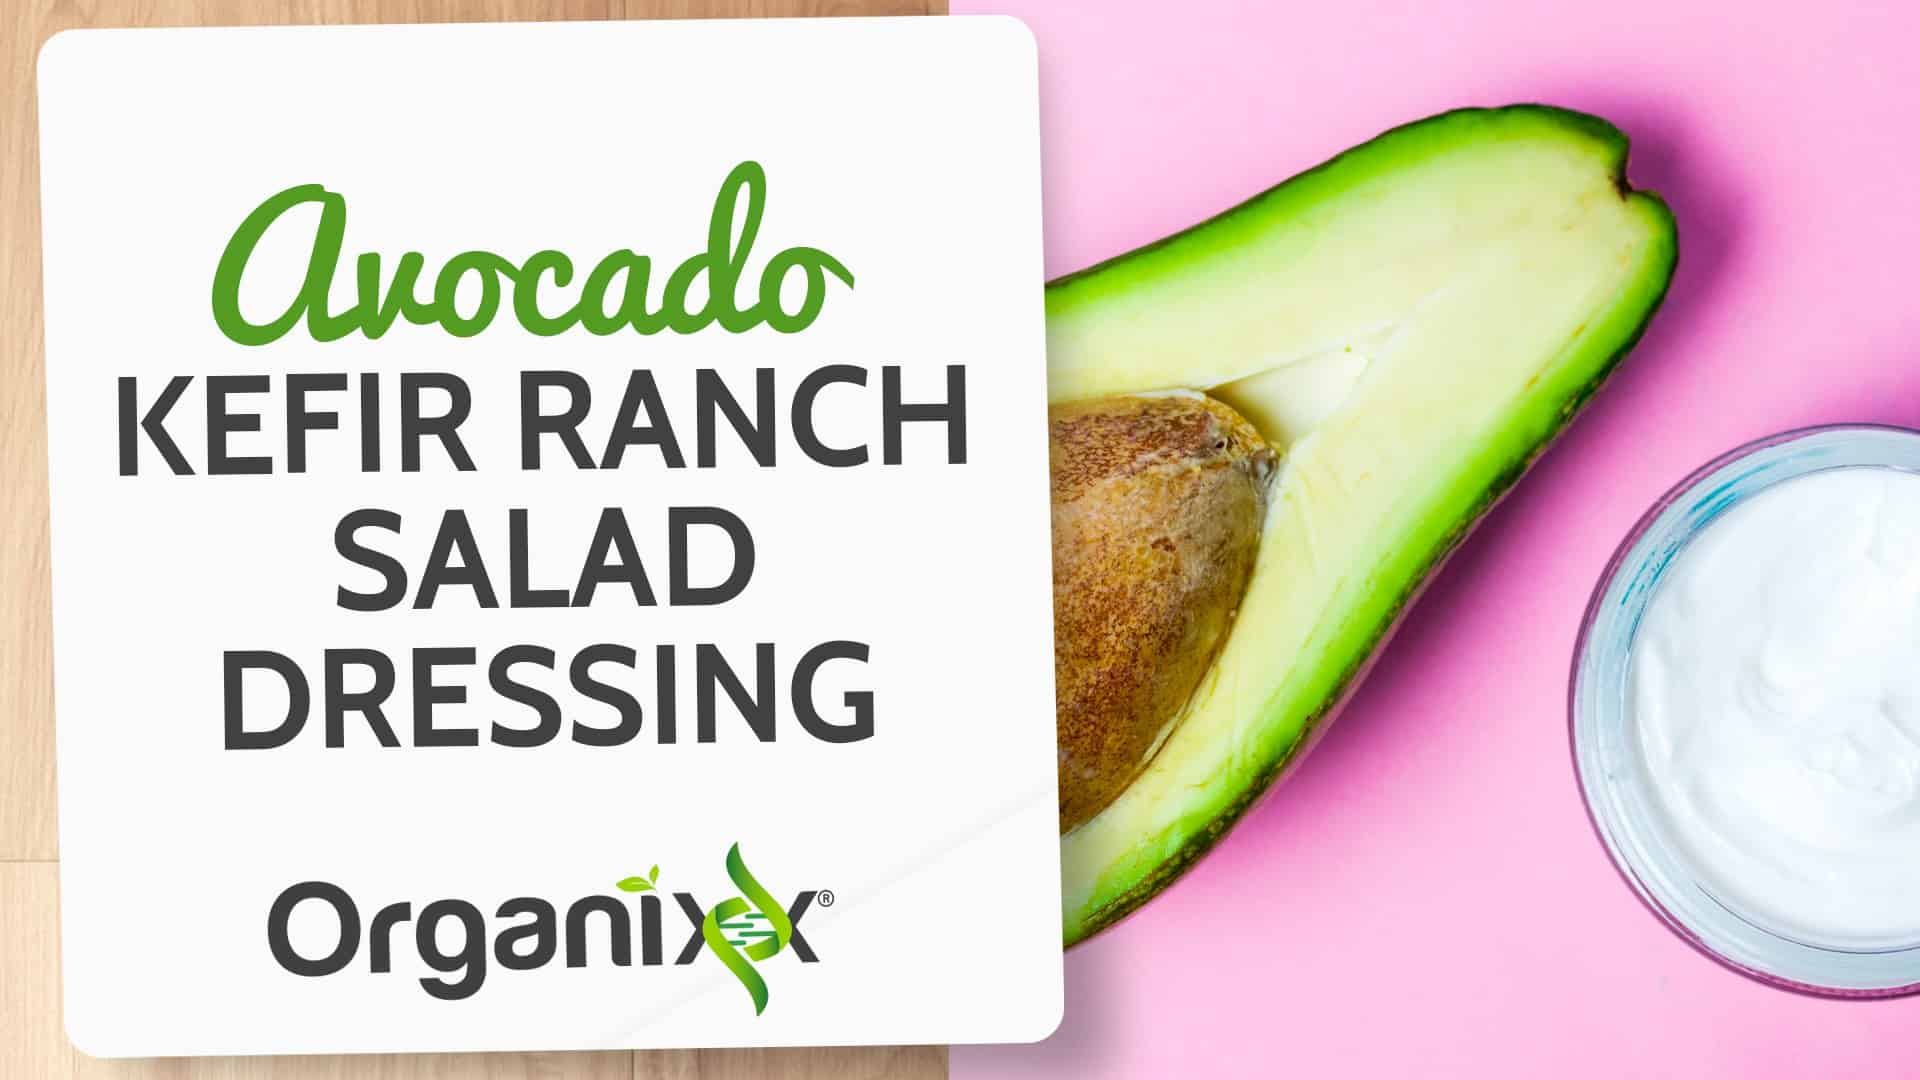 Avocado Kefir Ranch Salad Dressing